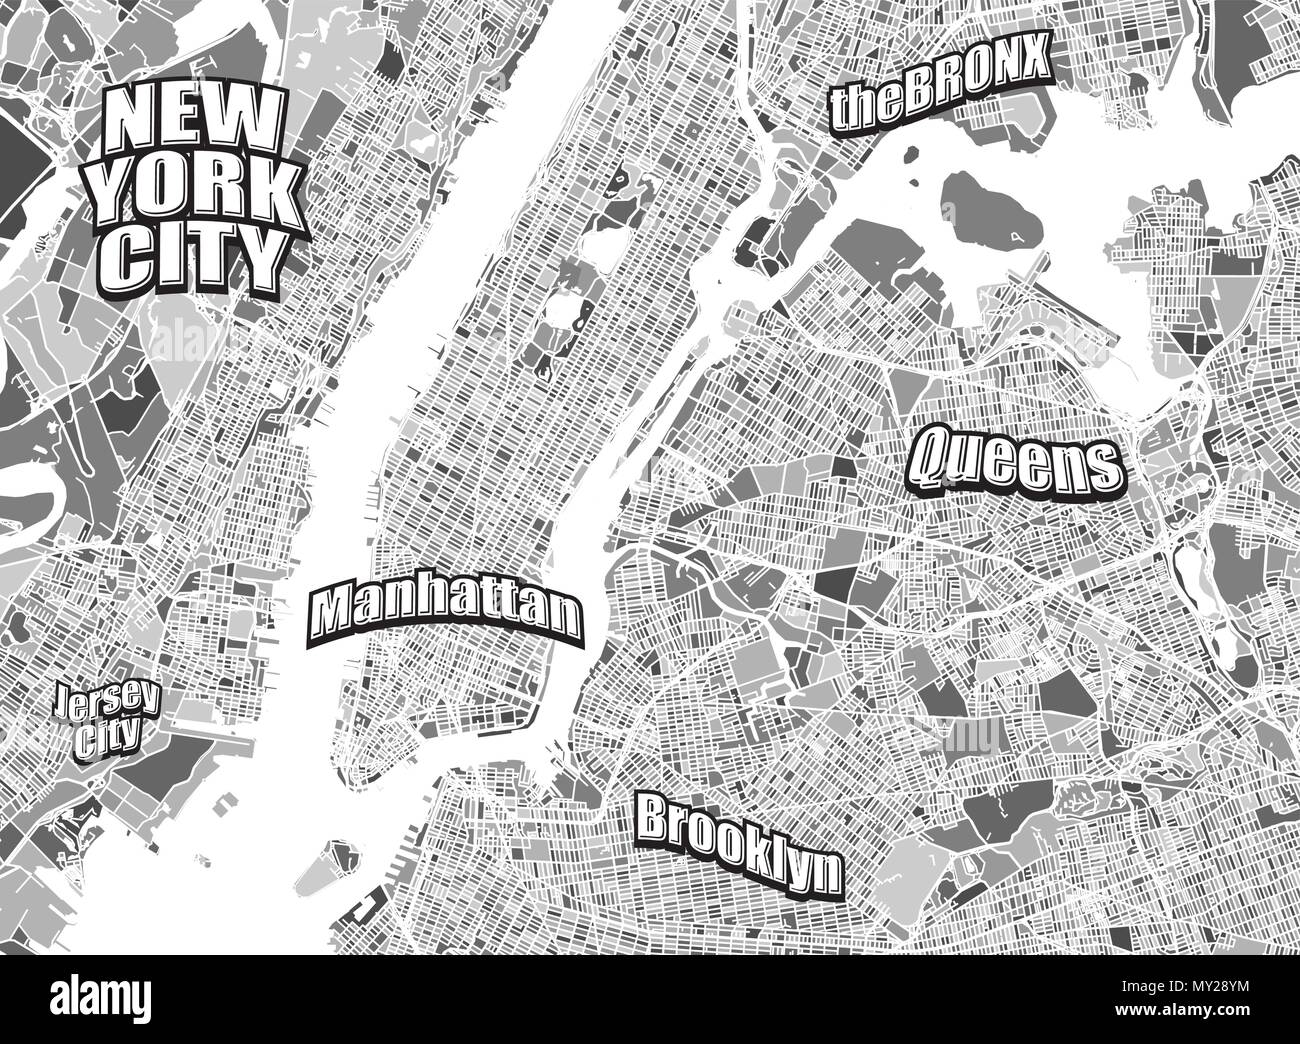 New York City mappa della zona. Molto scrupoloso versione senza ponti. Letterings seperatly raggruppati in versione vettoriale. Illustrazione Vettoriale